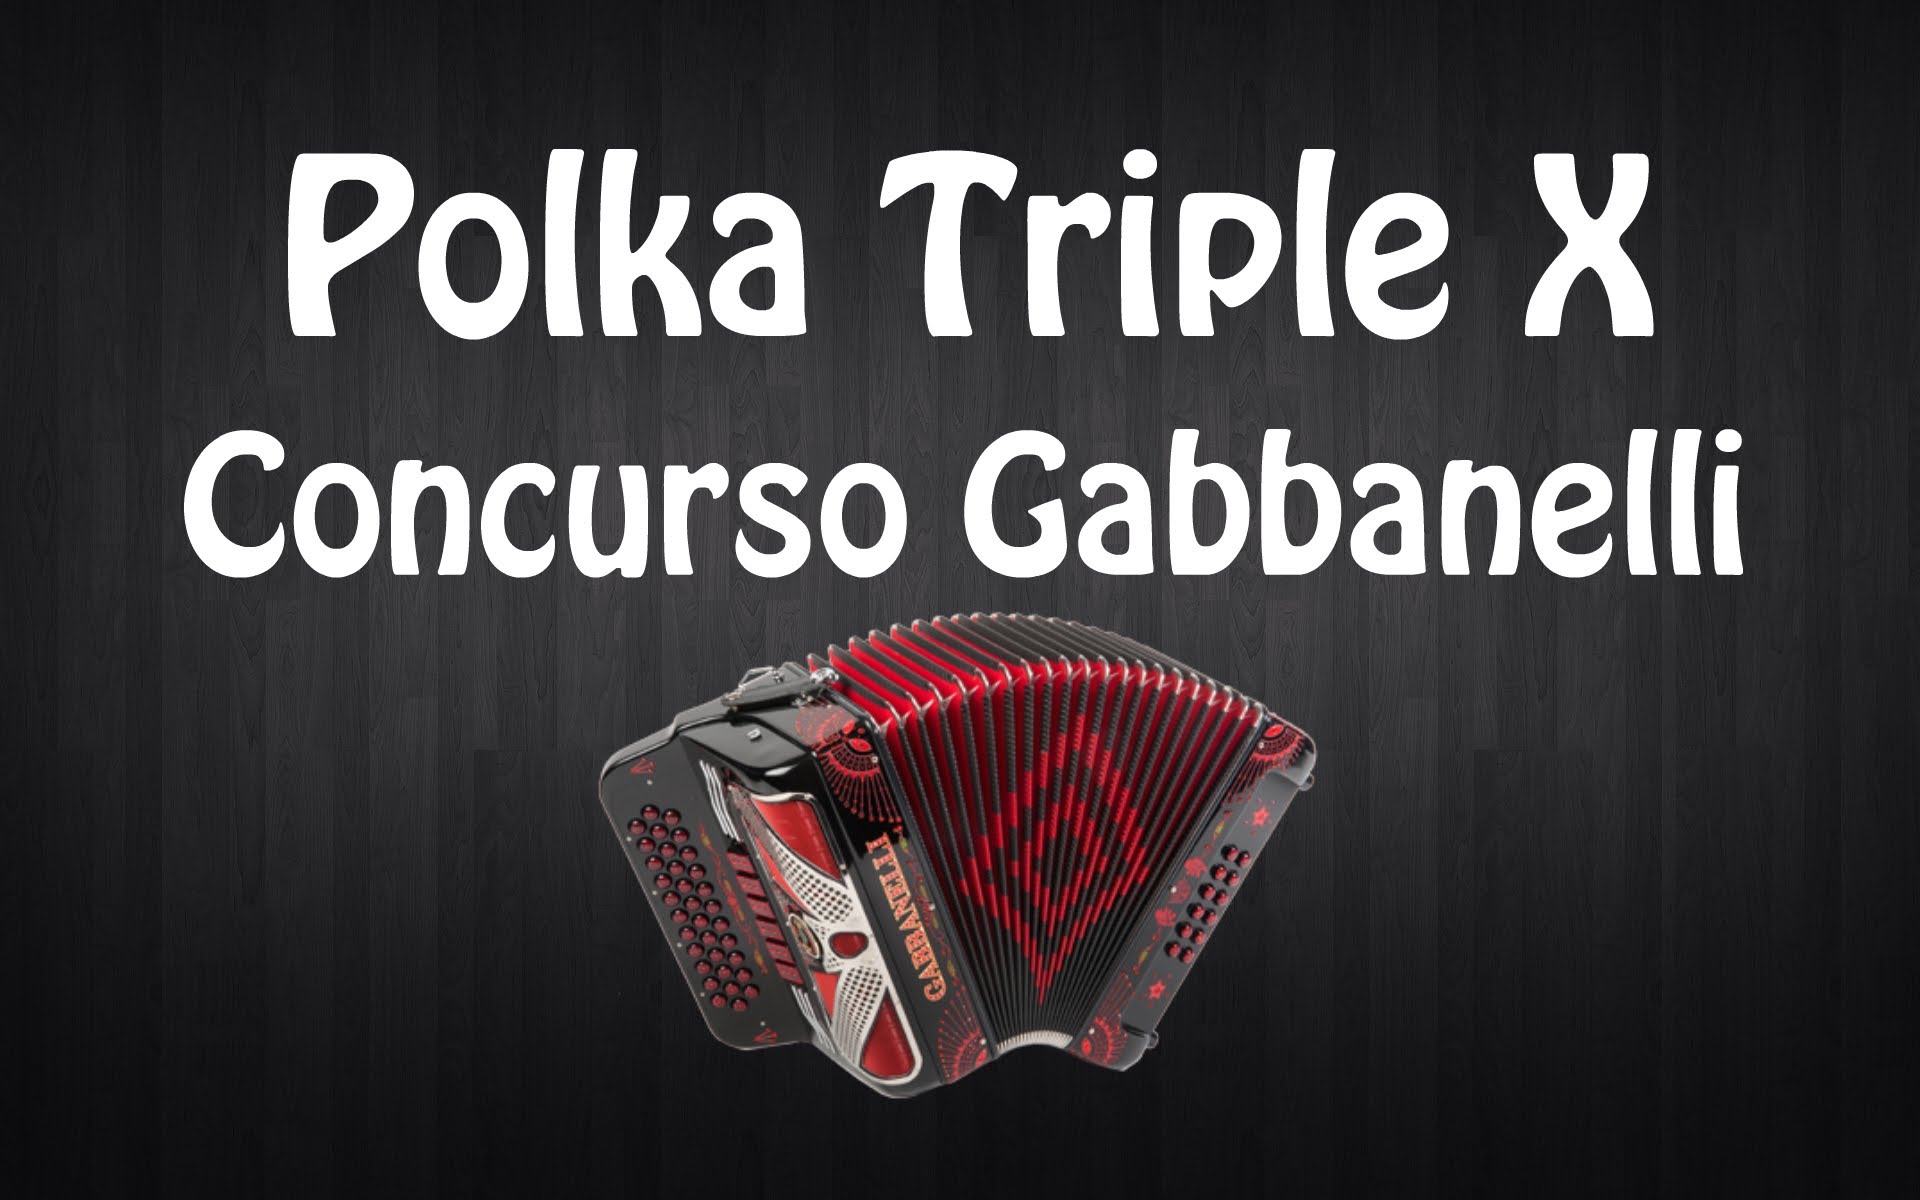 Polka Triple X Accordion (Video concurso Gabbanelli 2013) - YouTube